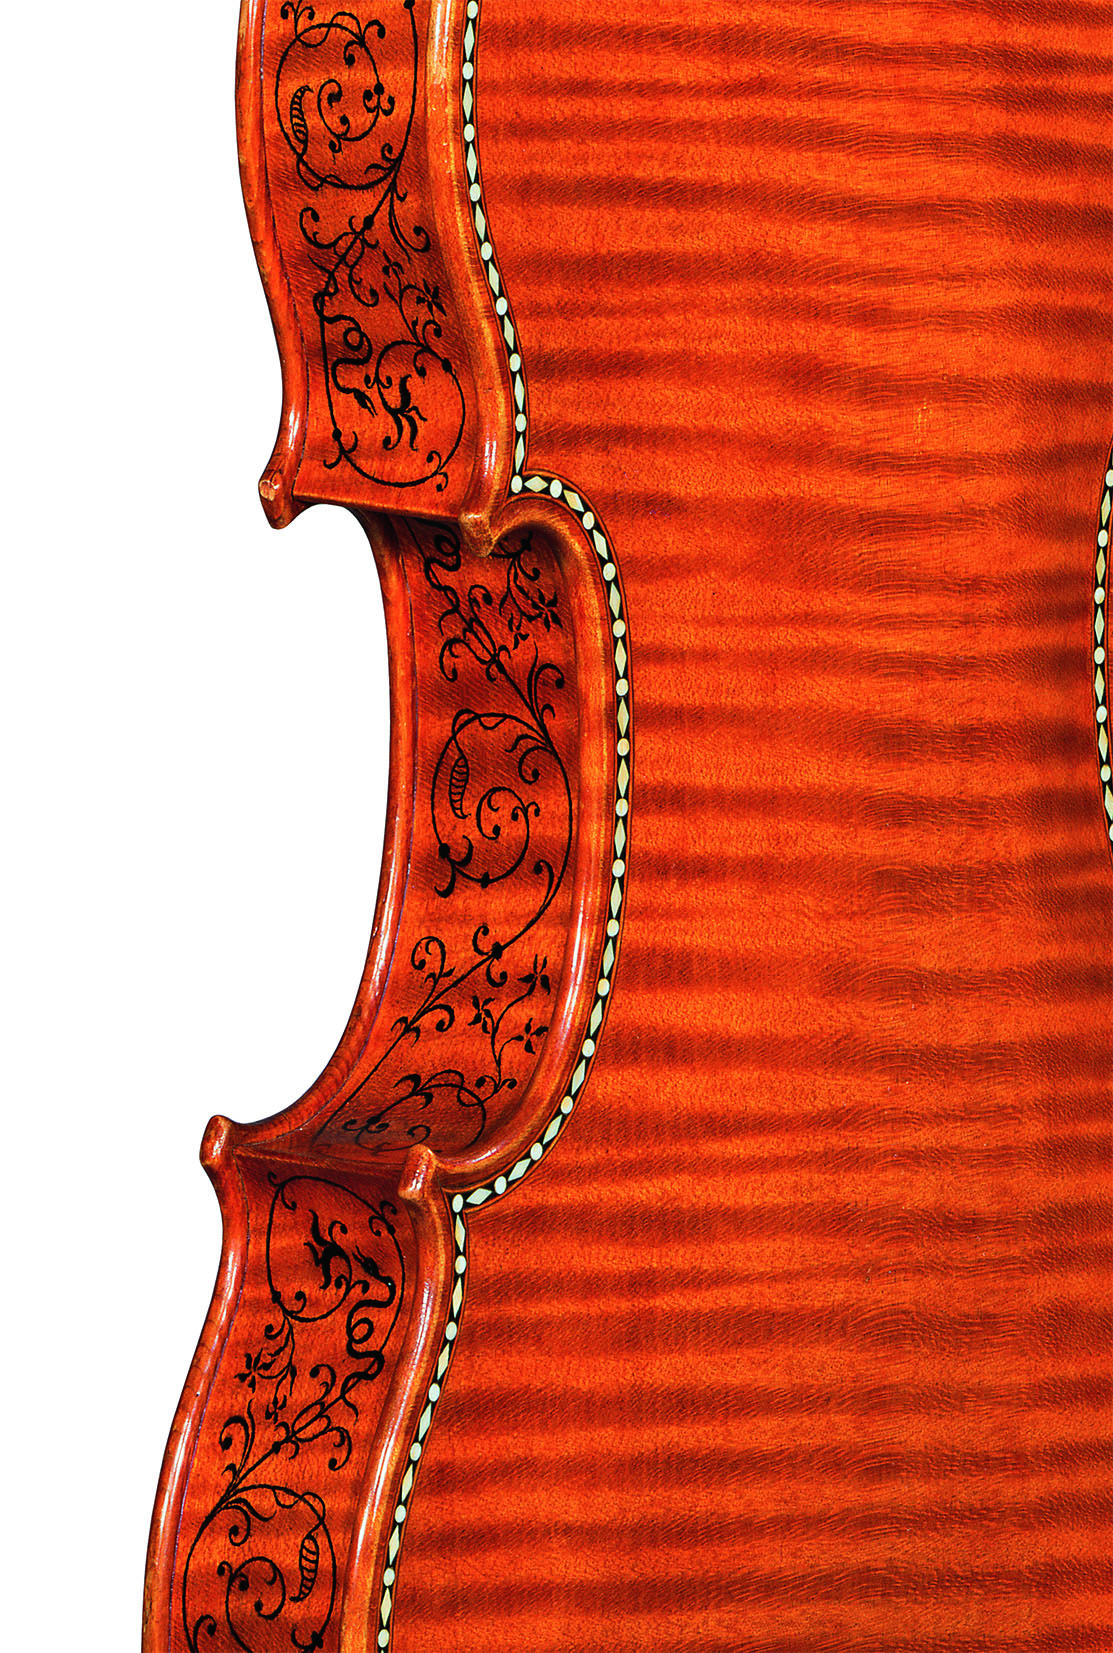 Stradivari e la liuteria cremonese in mostra in Arizona